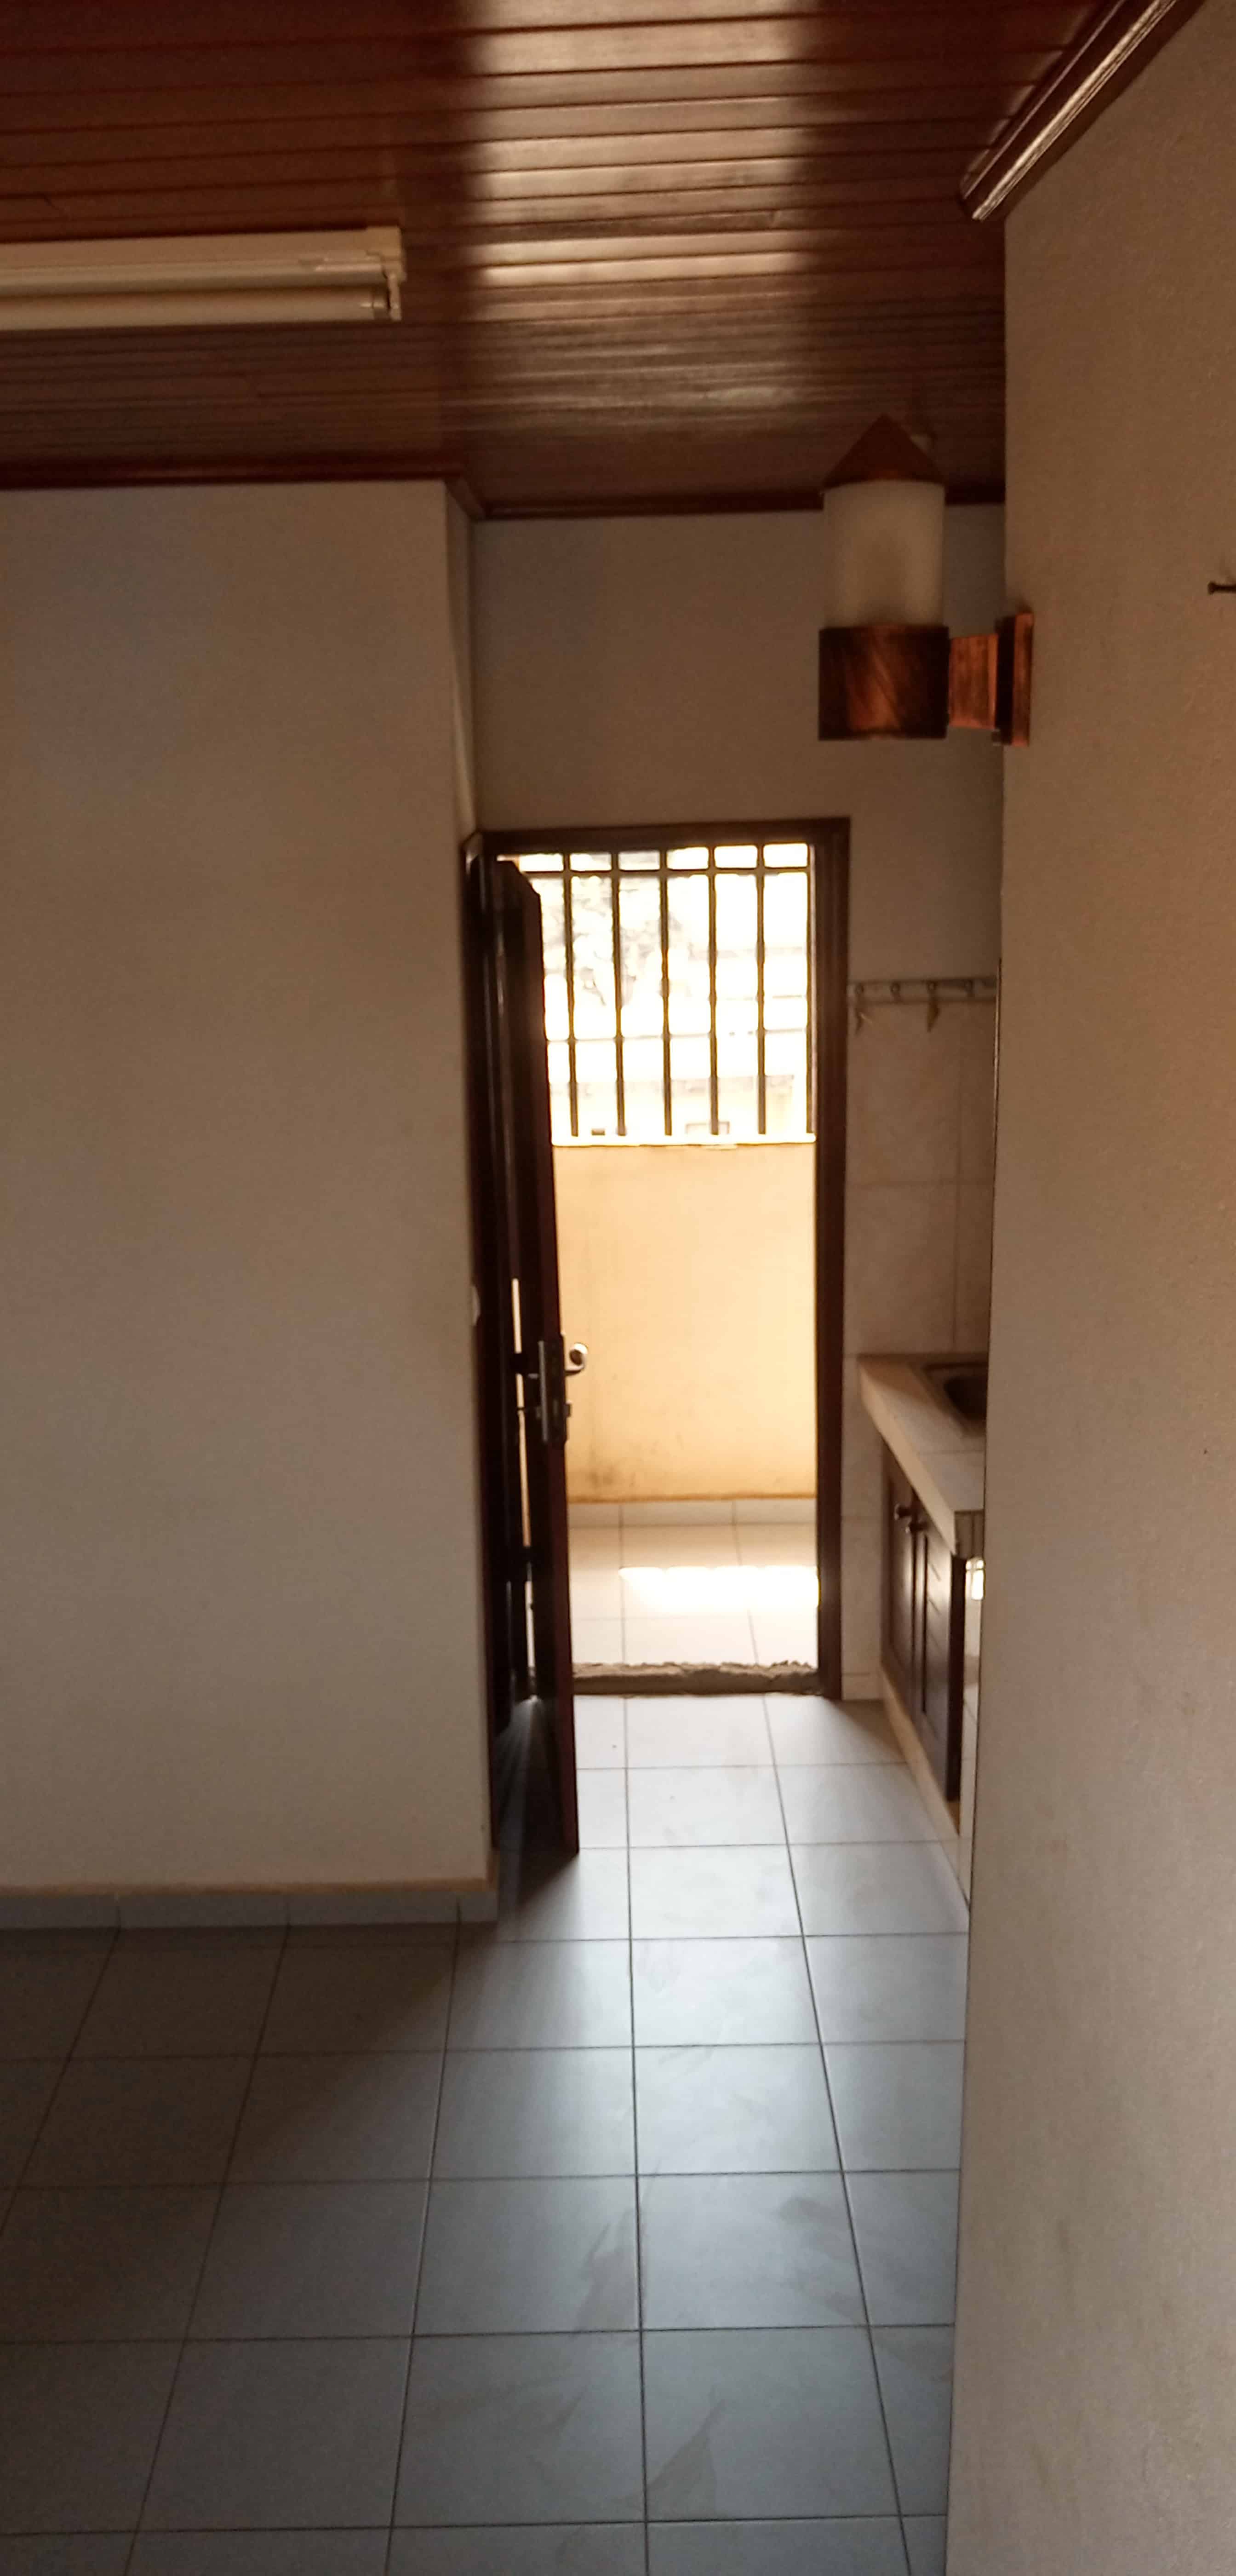 Chambre à louer - Yaoundé, Essos, Hôtel du plateau - 80 000 FCFA / mois